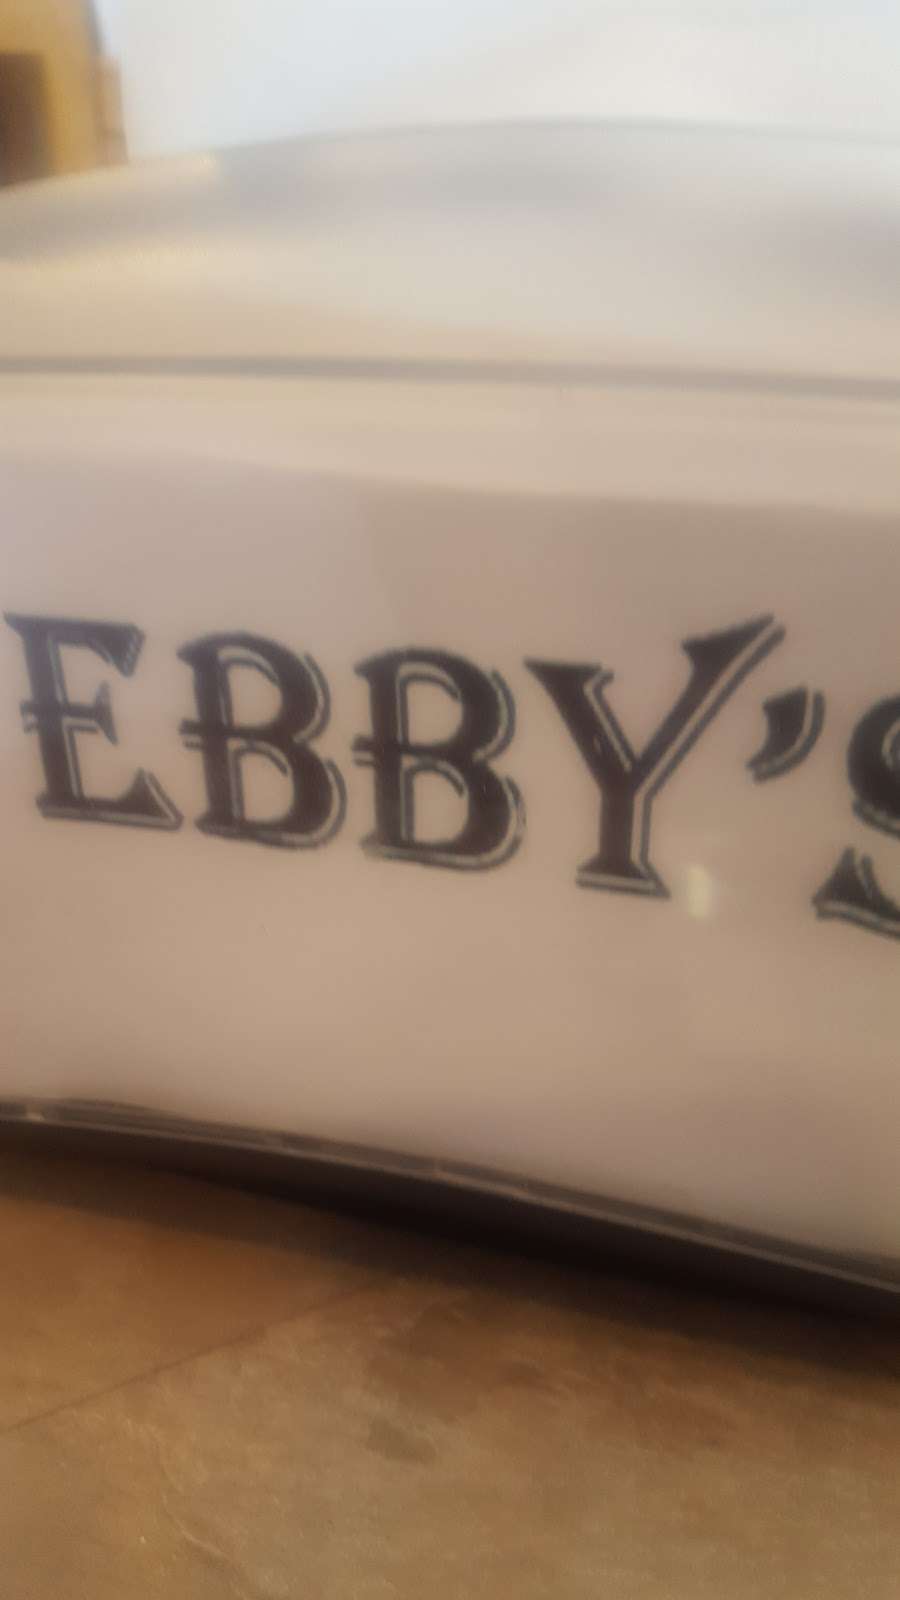 Ebbys Deli | 2001 W Central Ave, Seaside Park, NJ 08752, USA | Phone: (732) 250-4040